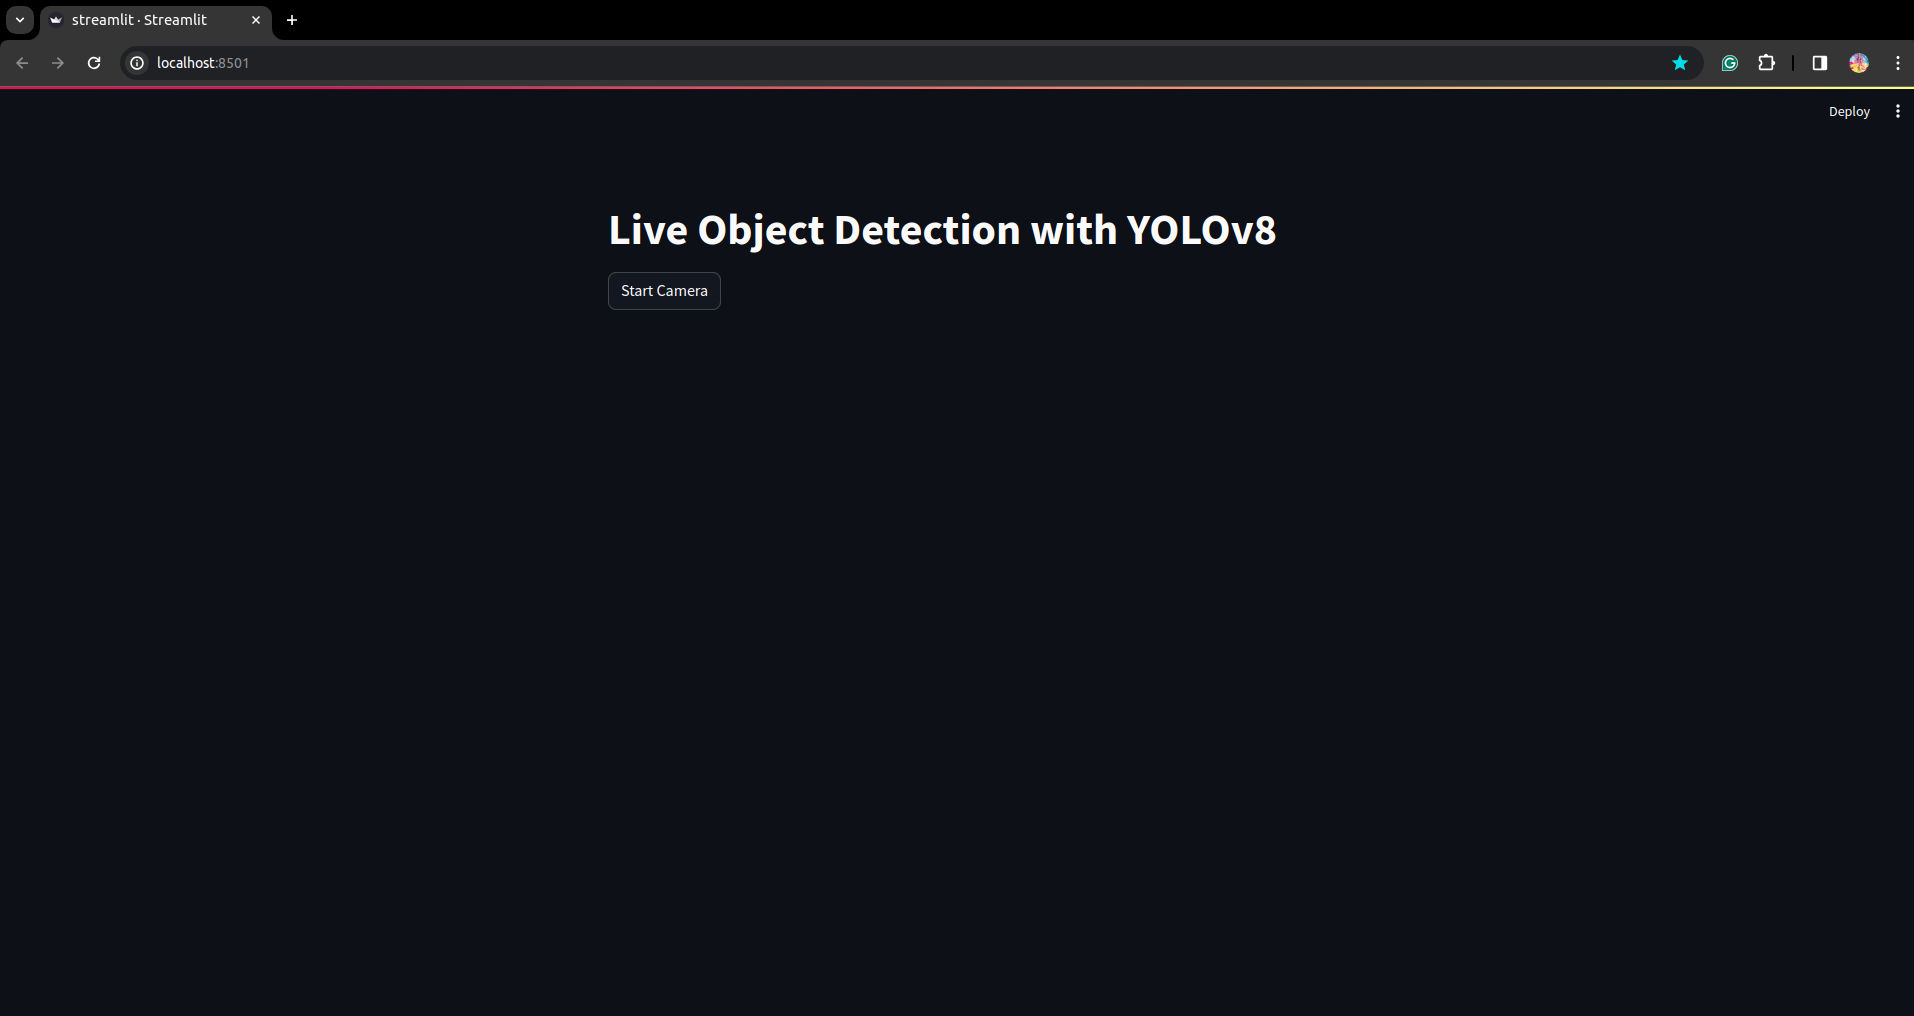 Detecção de objetos vivos | Segmentação de imagens usando YOLOv8